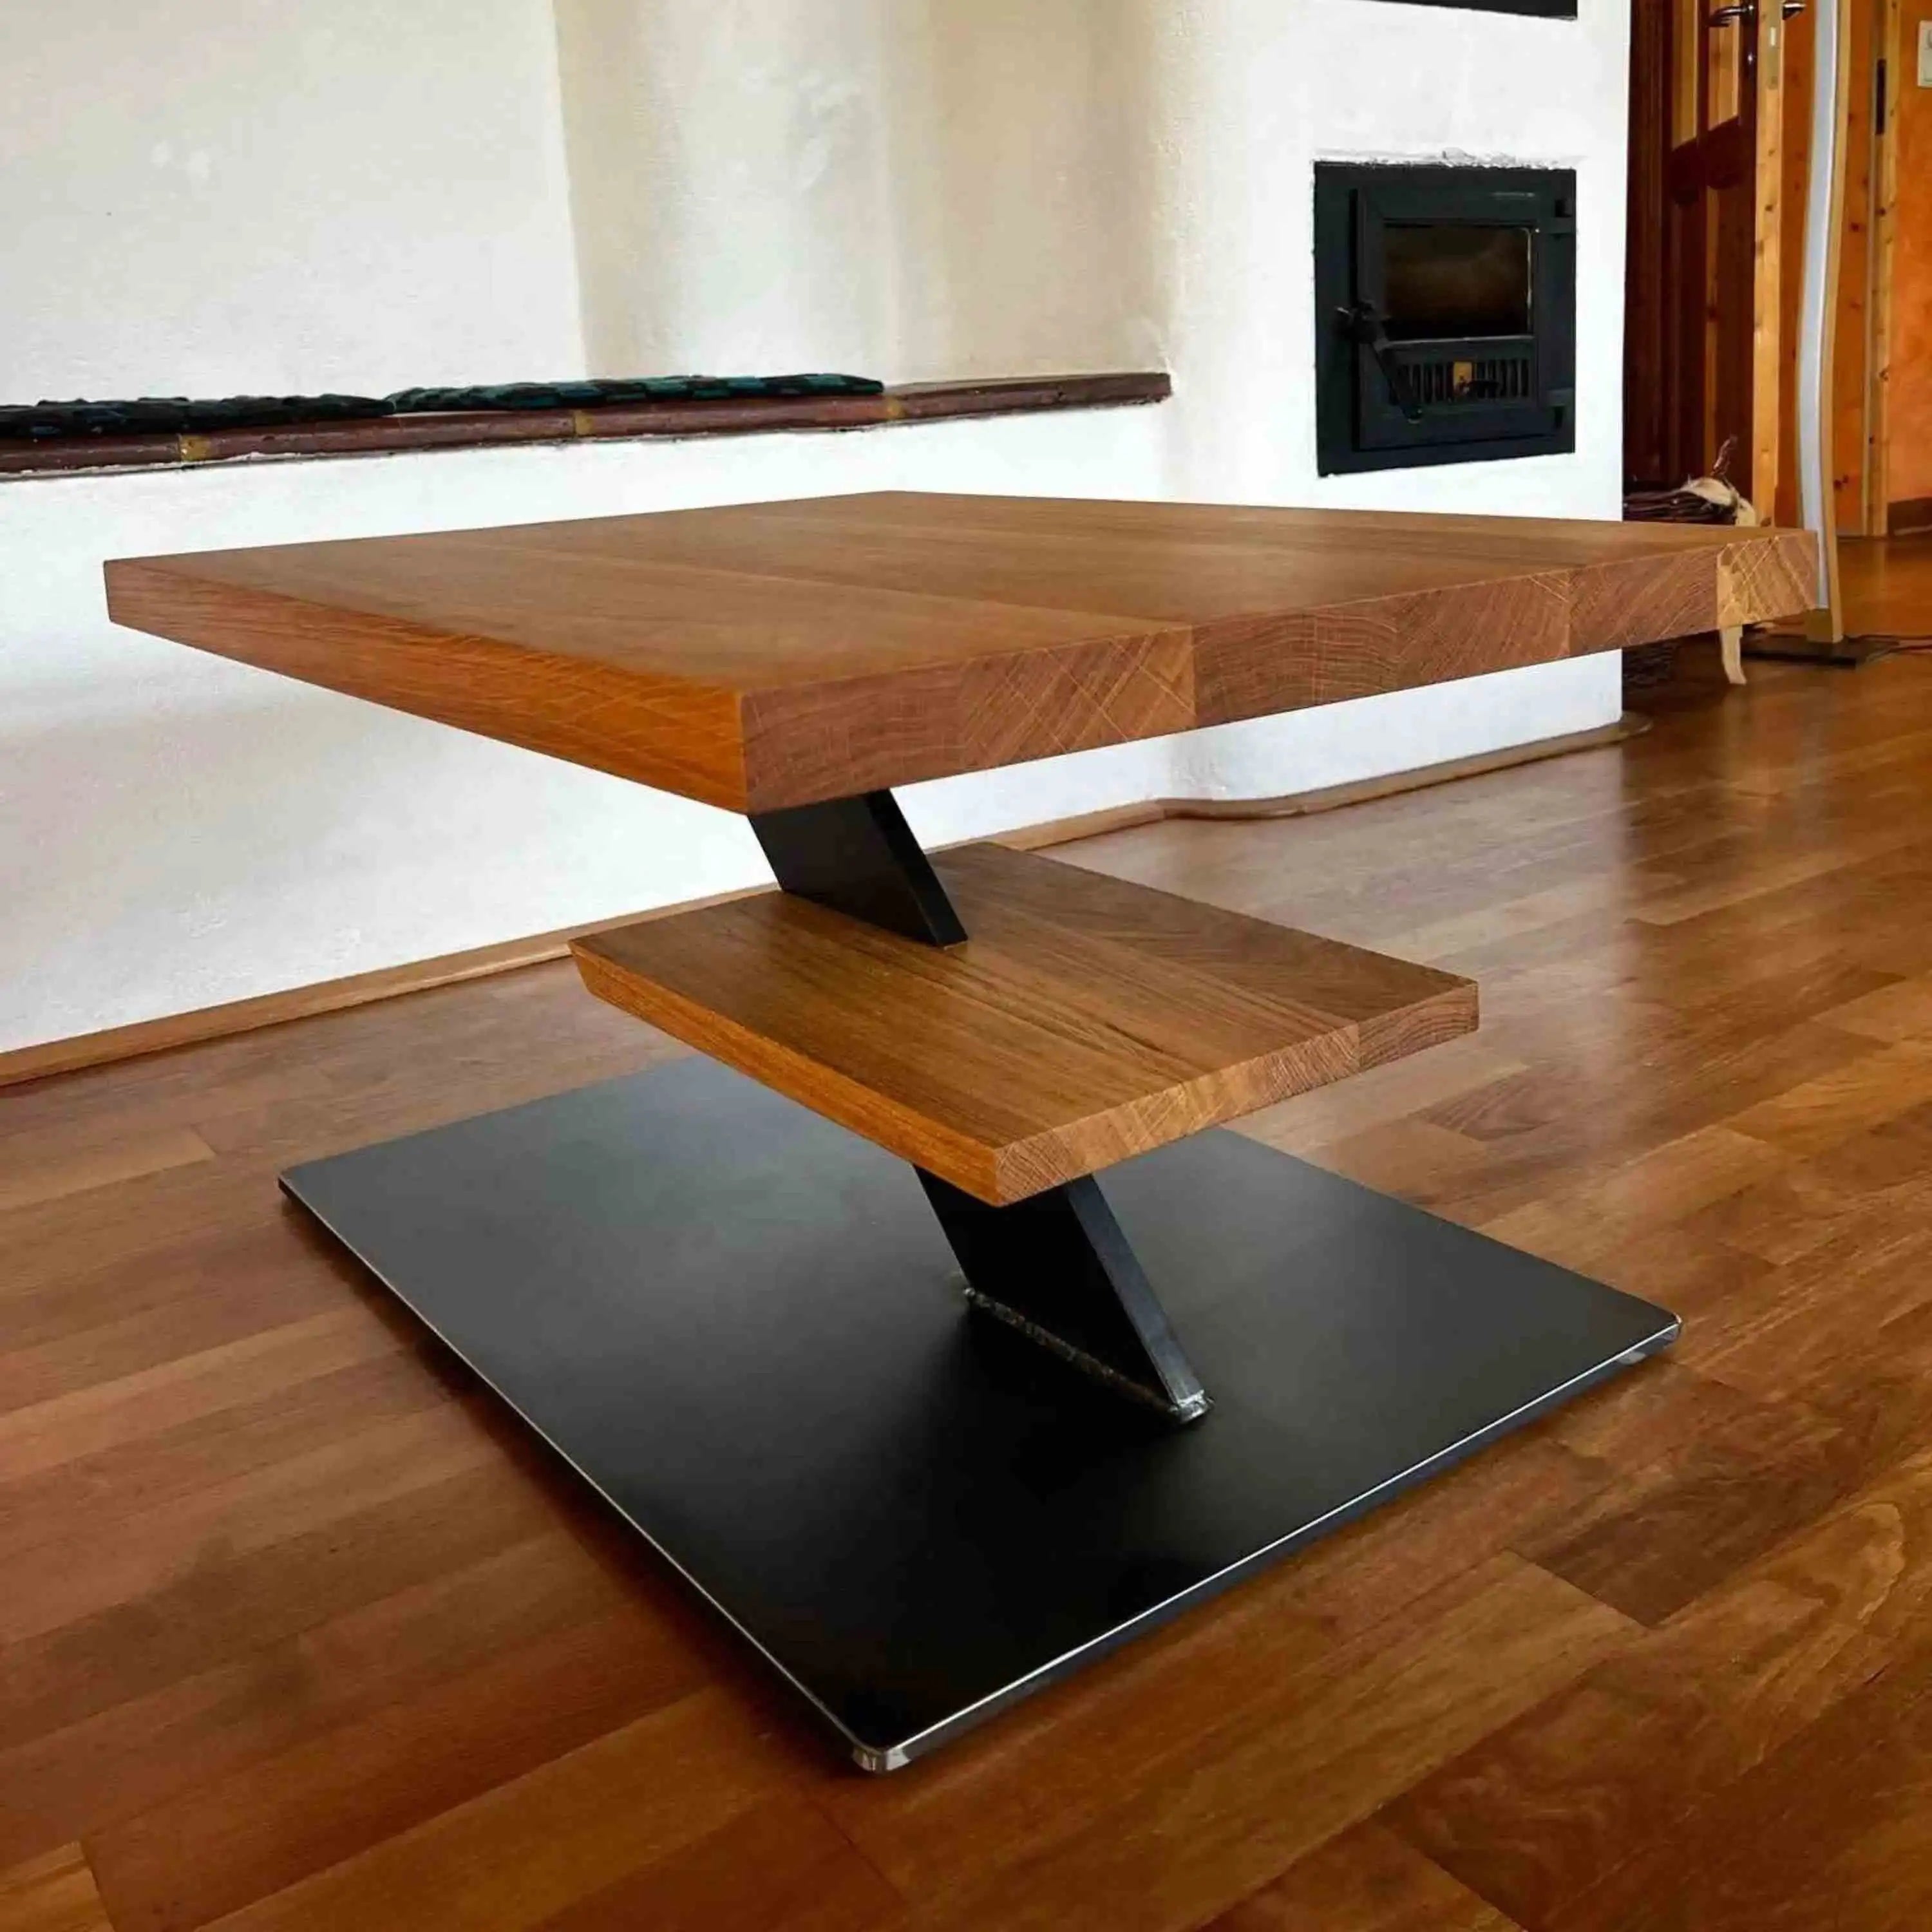 Ein Statement-Möbelstück für Liebhaber von klarem Design und natürlichen Materialien.